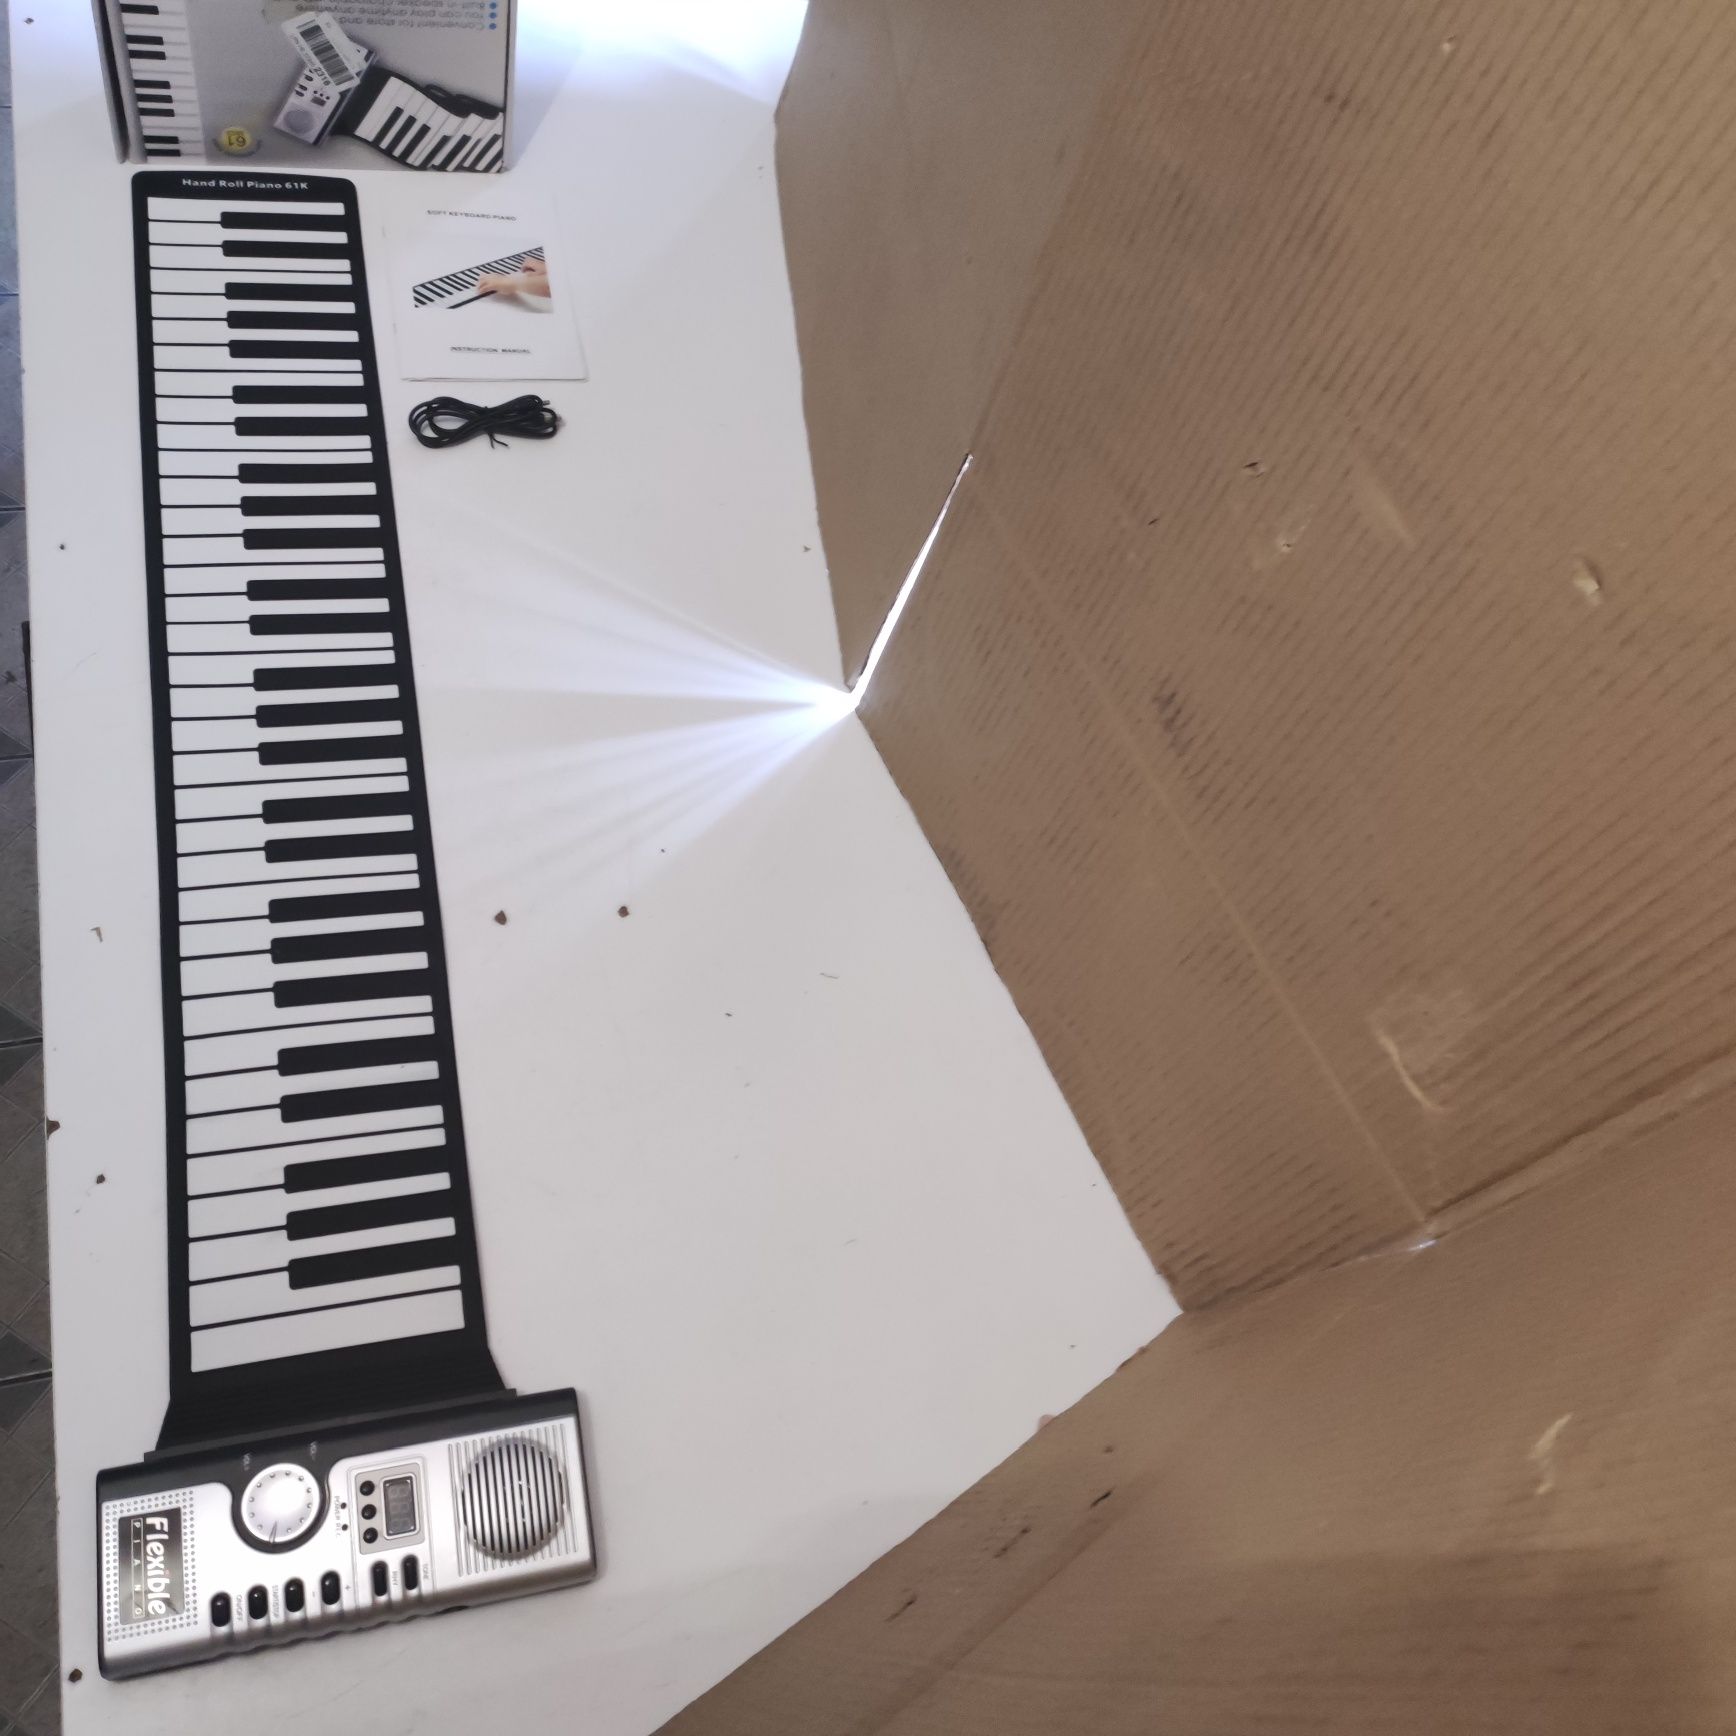 Reditmo Zabawkowa klawiatura fortepianowa z mikrofonem